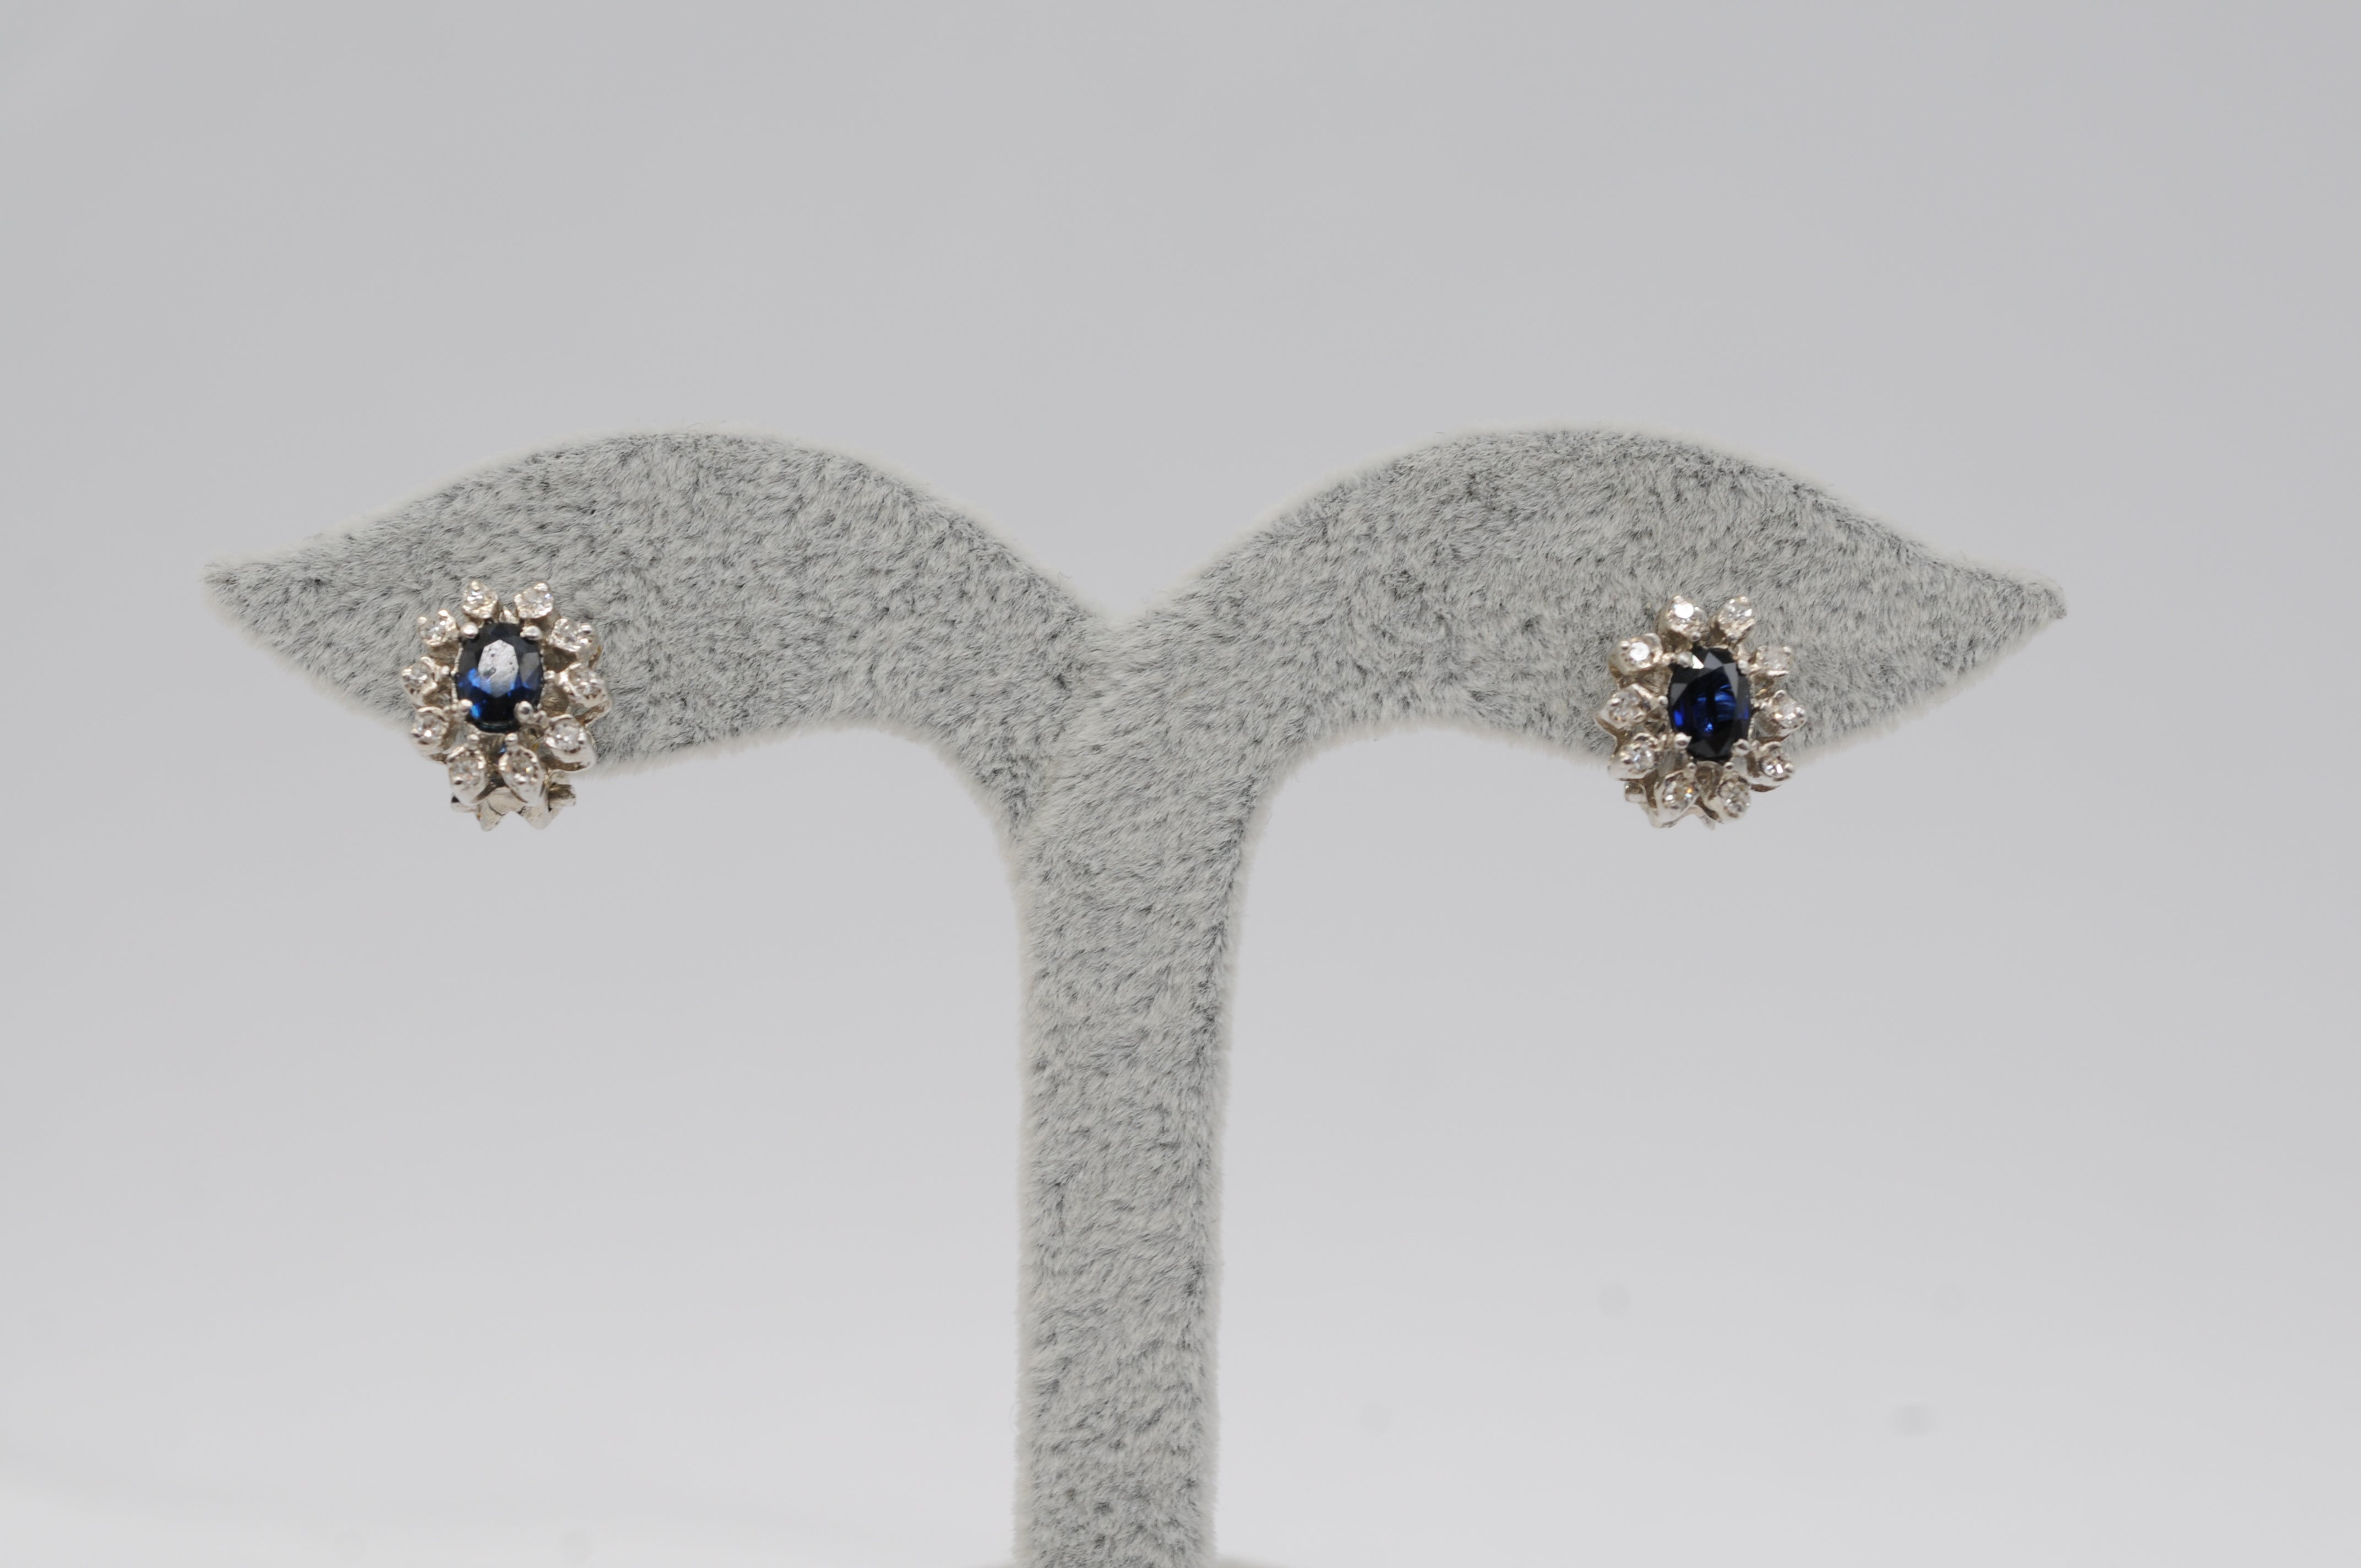 Lassen Sie sich von der schieren Schönheit dieses atemberaubenden Ohrringpaars verzaubern. Jeder Ohrring ist aus exquisitem 14-karätigem Weißgold gefertigt und zeigt einen bezaubernden Saphir im Ovalschliff, der von insgesamt 10 Diamanten im